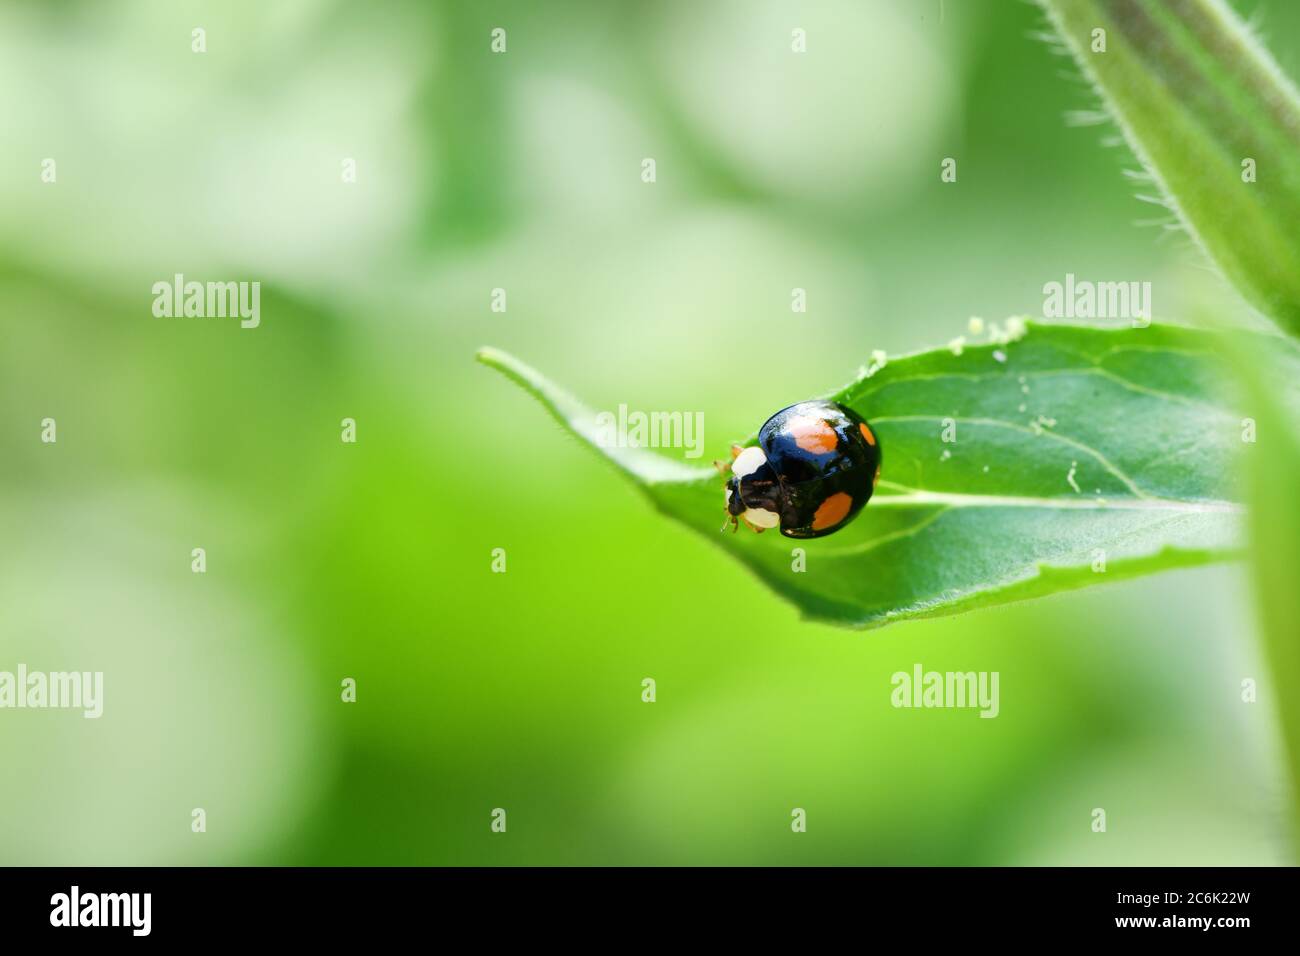 Makro eines asiatischen Marienkäfer (Harmonia axyridis, Coccinellidae), auch bekannt als "Multifarben" oder "Harlekin Marienkäfer", im Garten auf einem Blatt. Hohe RE Stockfoto